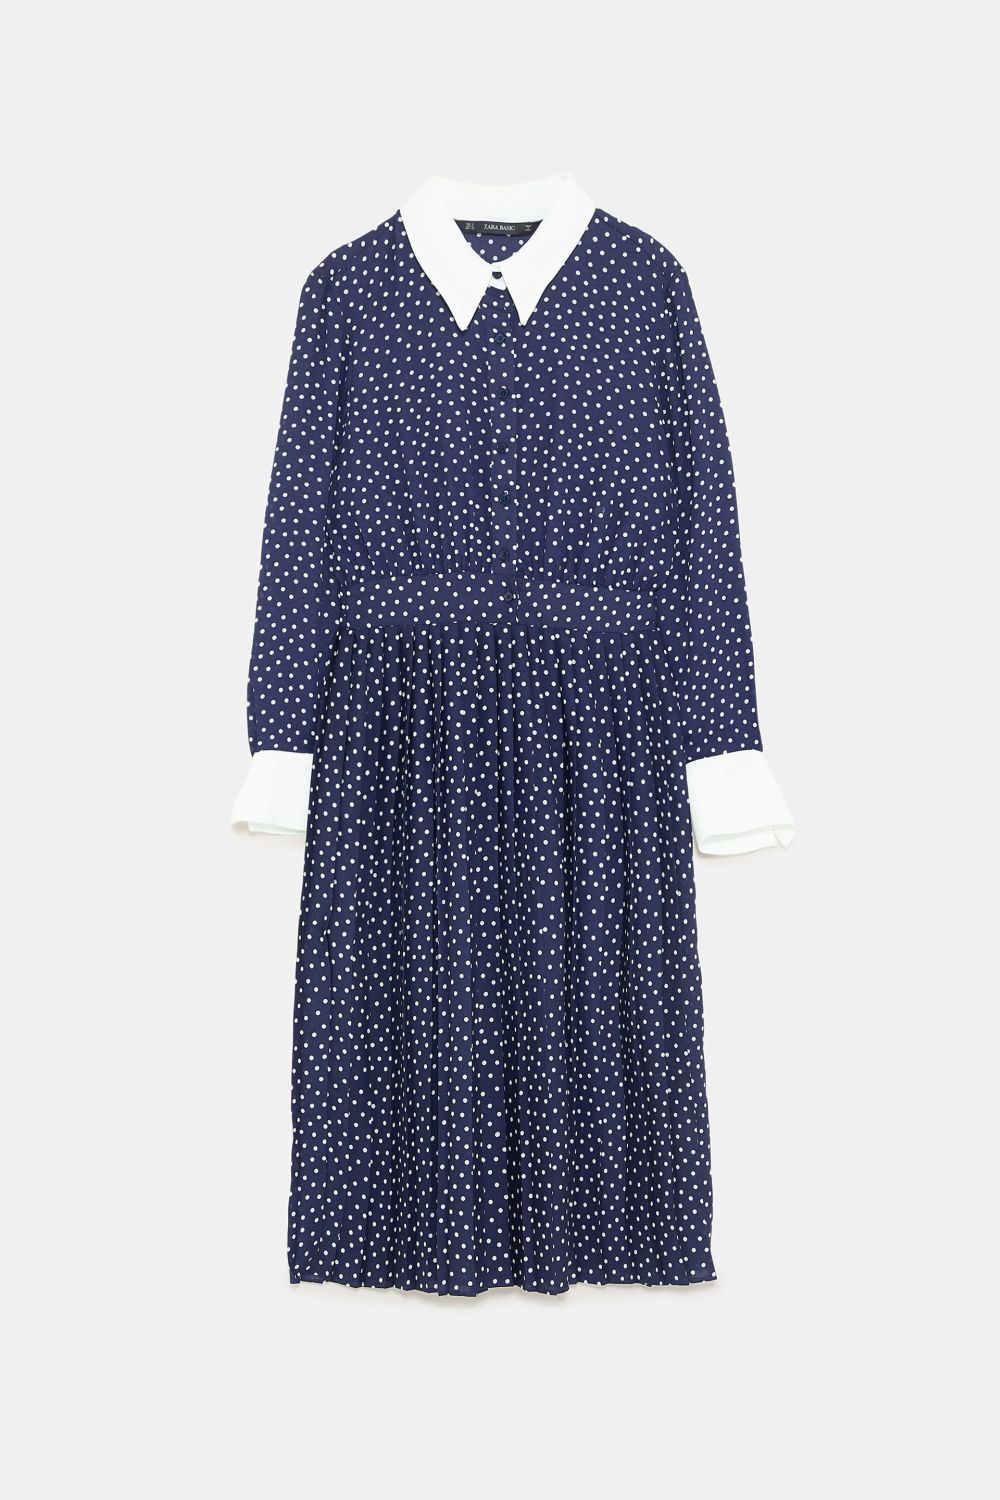 El vestido de lunares. De Zara (39,95 euros).